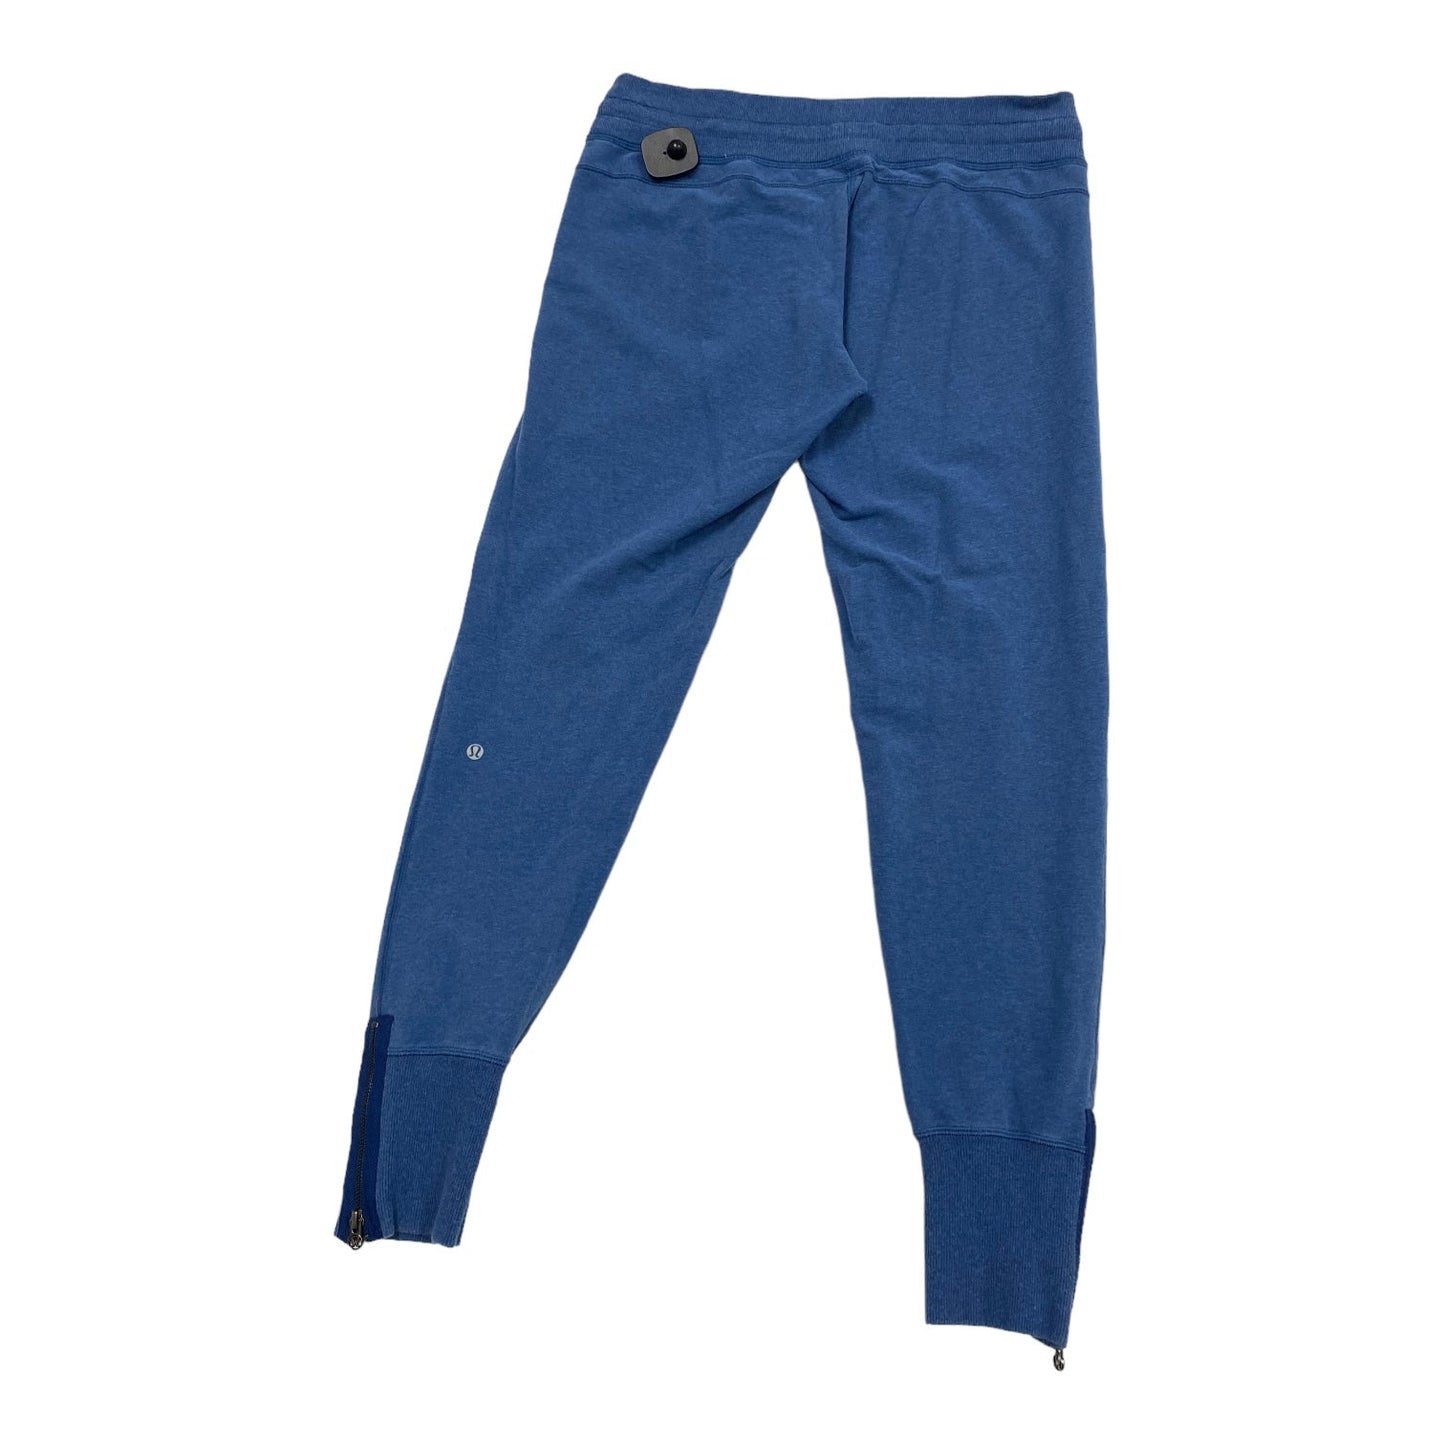 Blue Athletic Pants Lululemon, Size 10